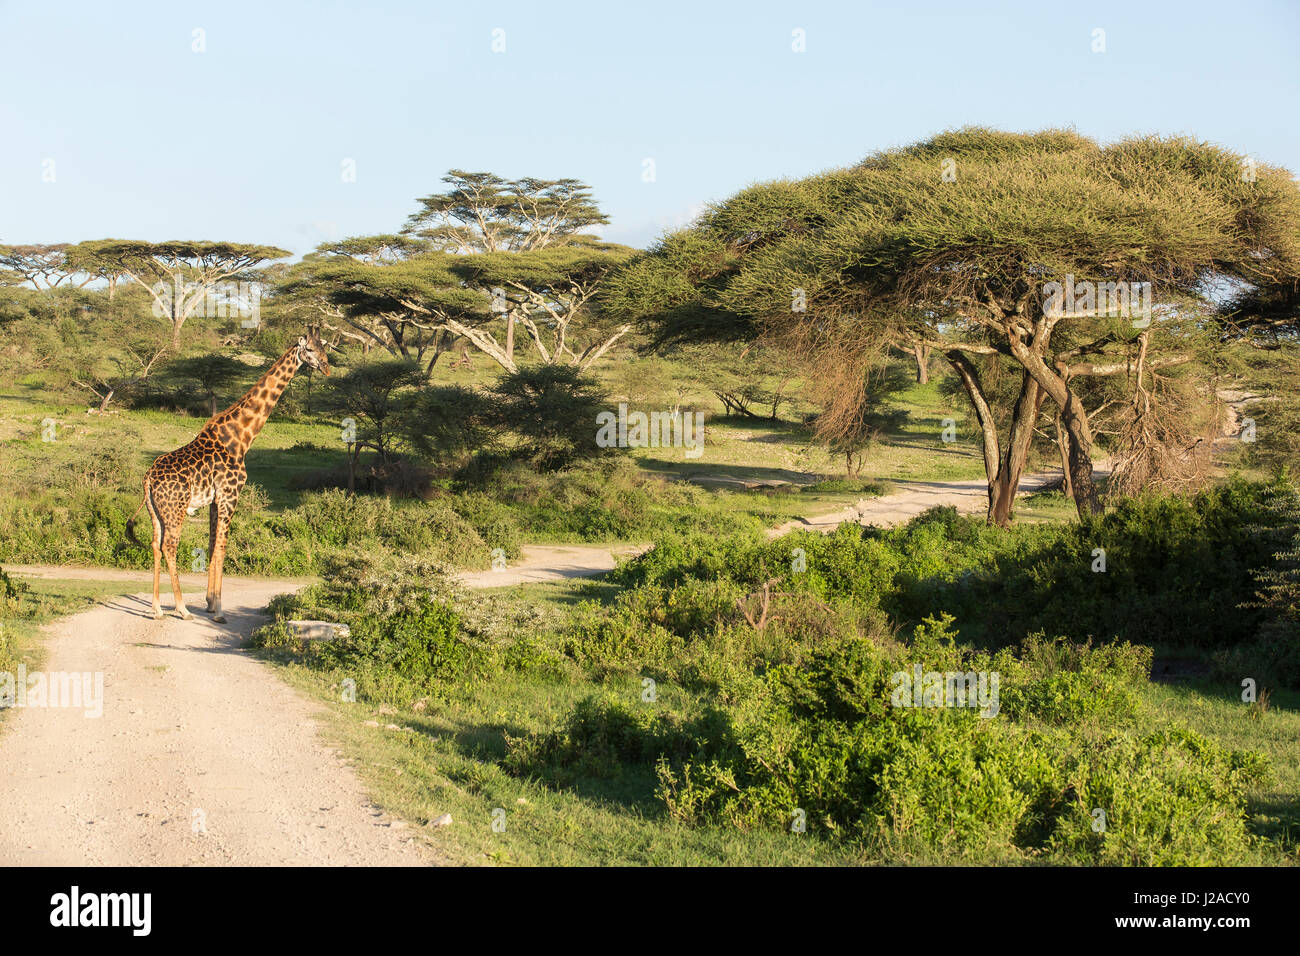 Seul mâle adulte girafe Masai est à un carrefour, regarder en arrière vers la caméra, entouré par les arbres d'acacia et vert feuillage dans l'arrière-plan, la Ngorongoro Conservation Area, Tanzania Banque D'Images